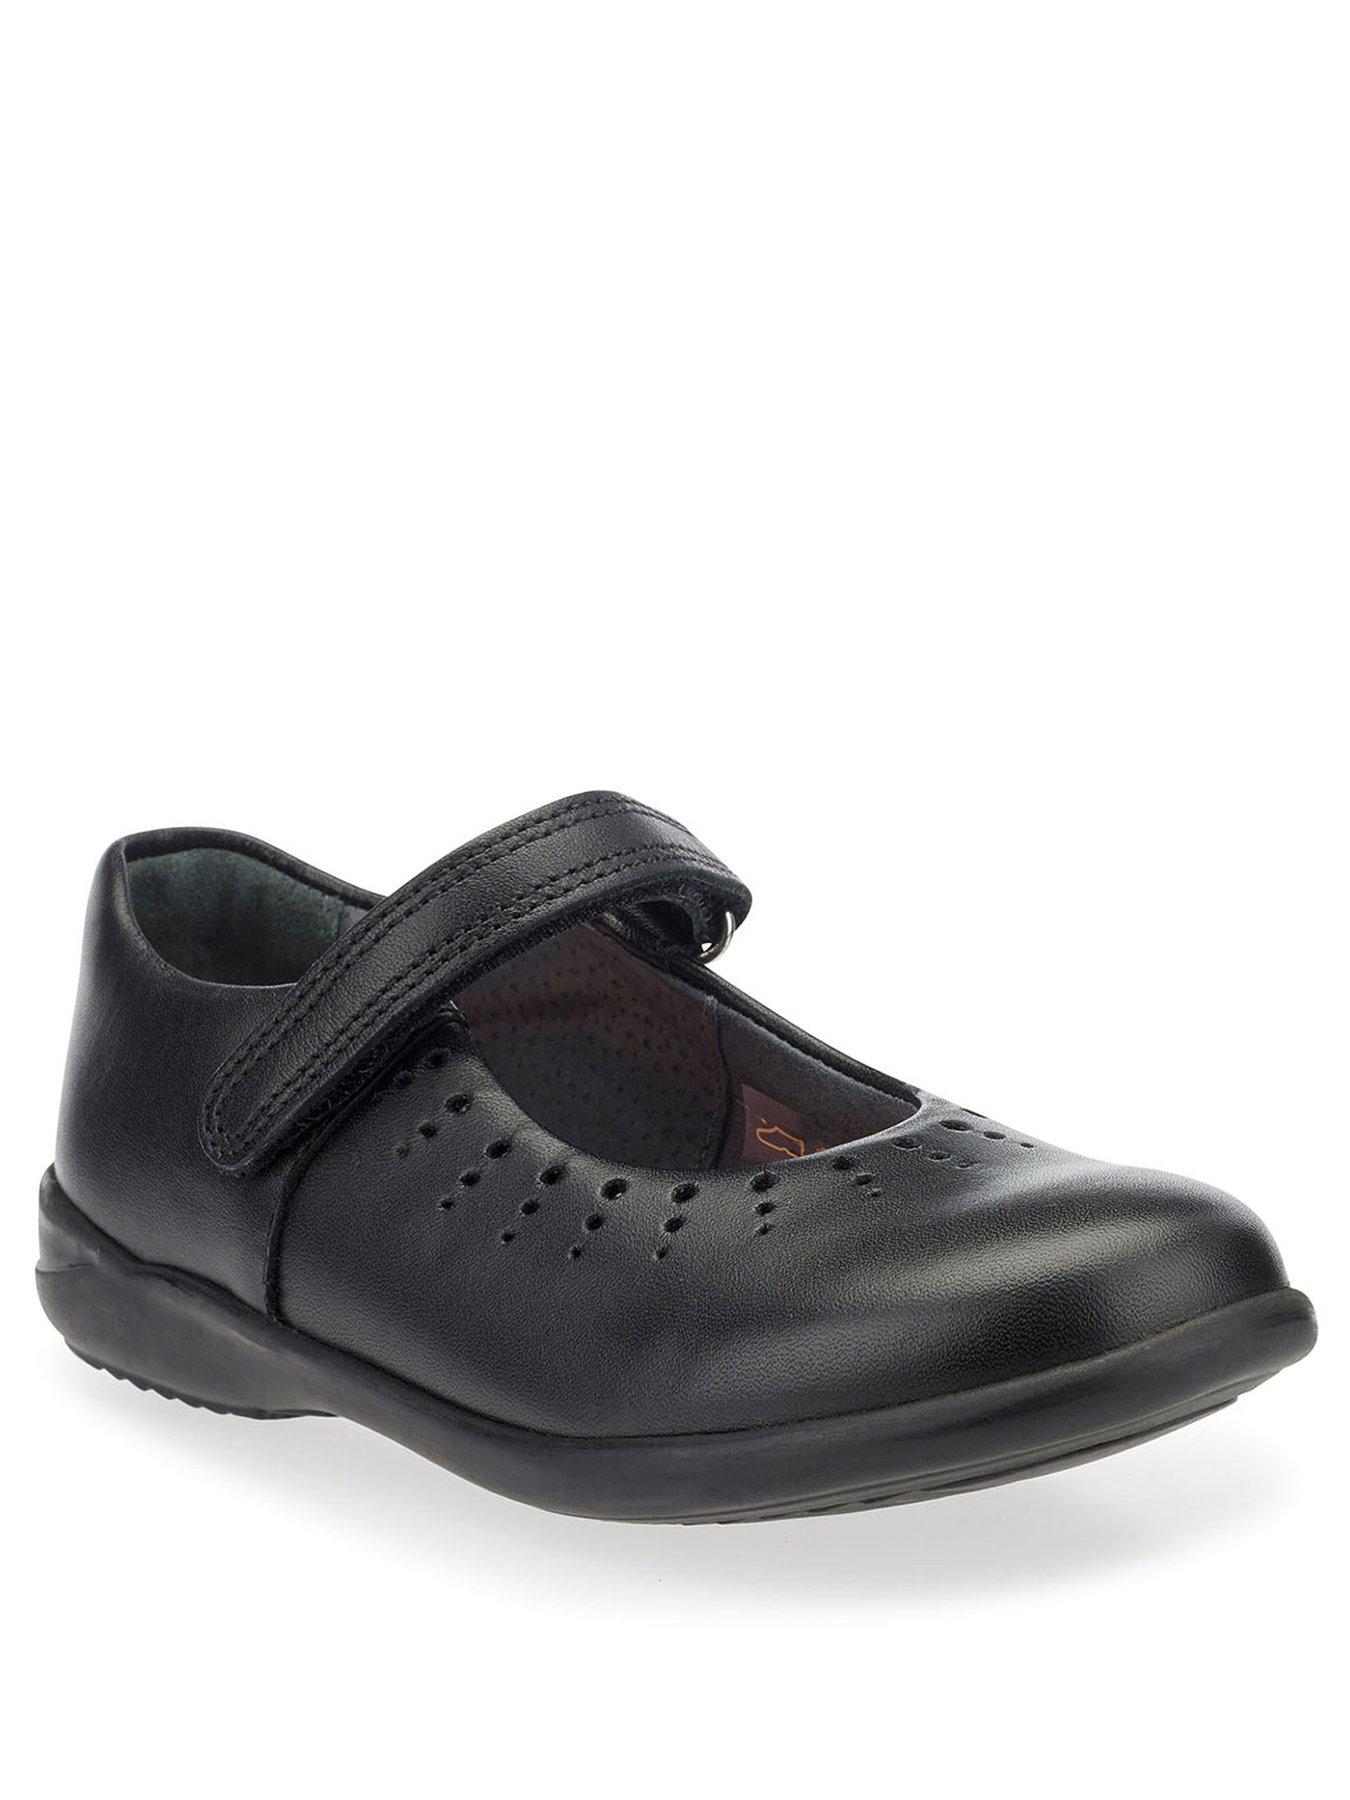 E - Narrow Fit | School shoes | Shoes 